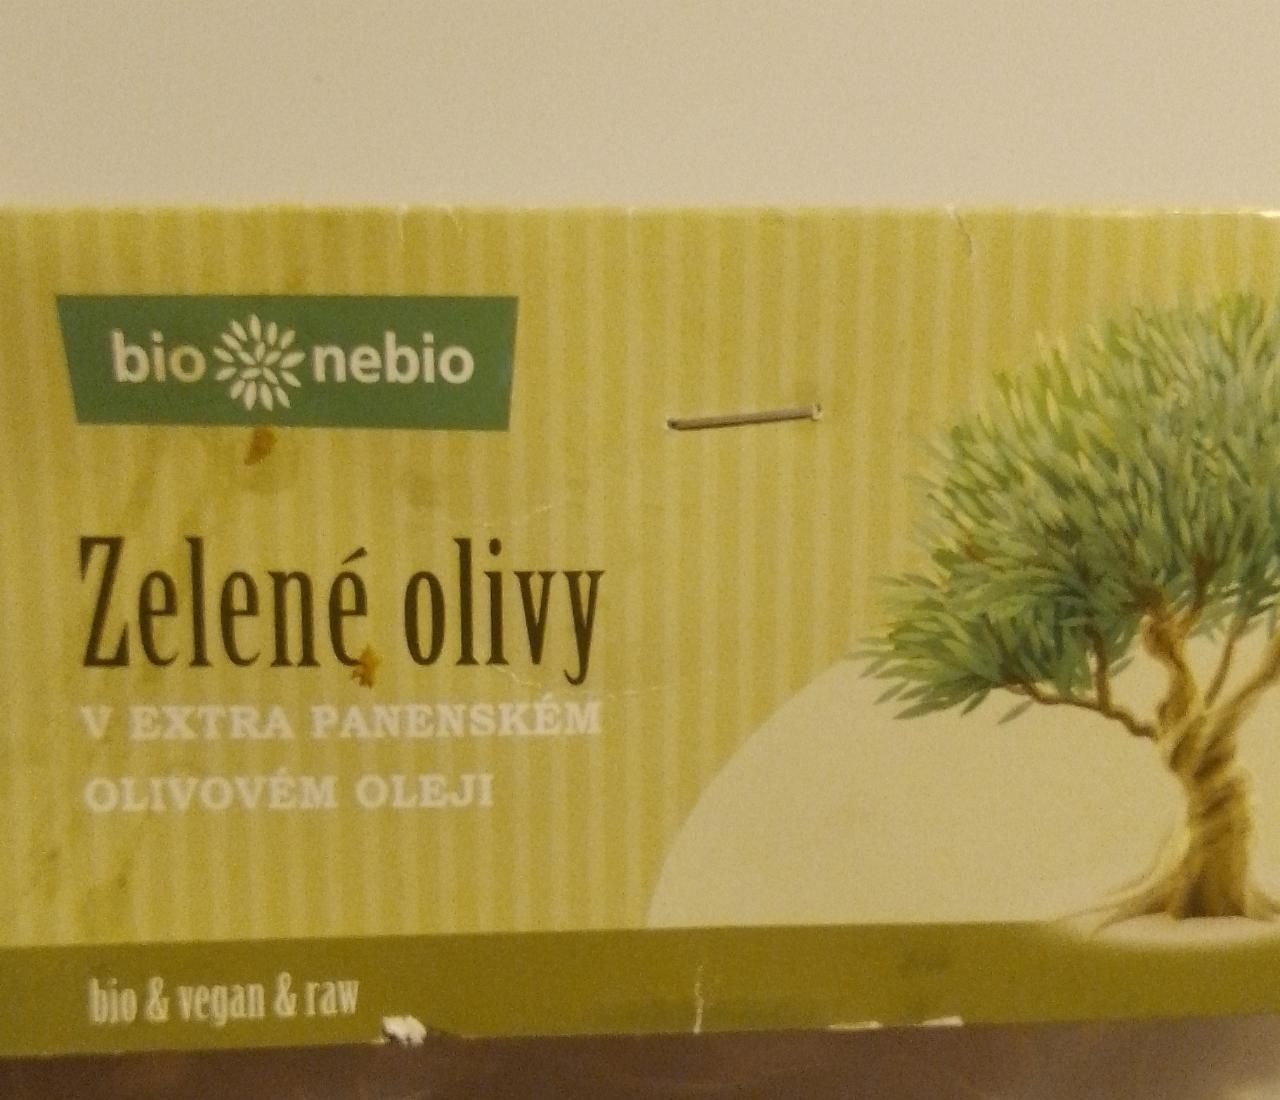 Fotografie - Zelené olivy v extra panenském olivovém oleji Bio nebio